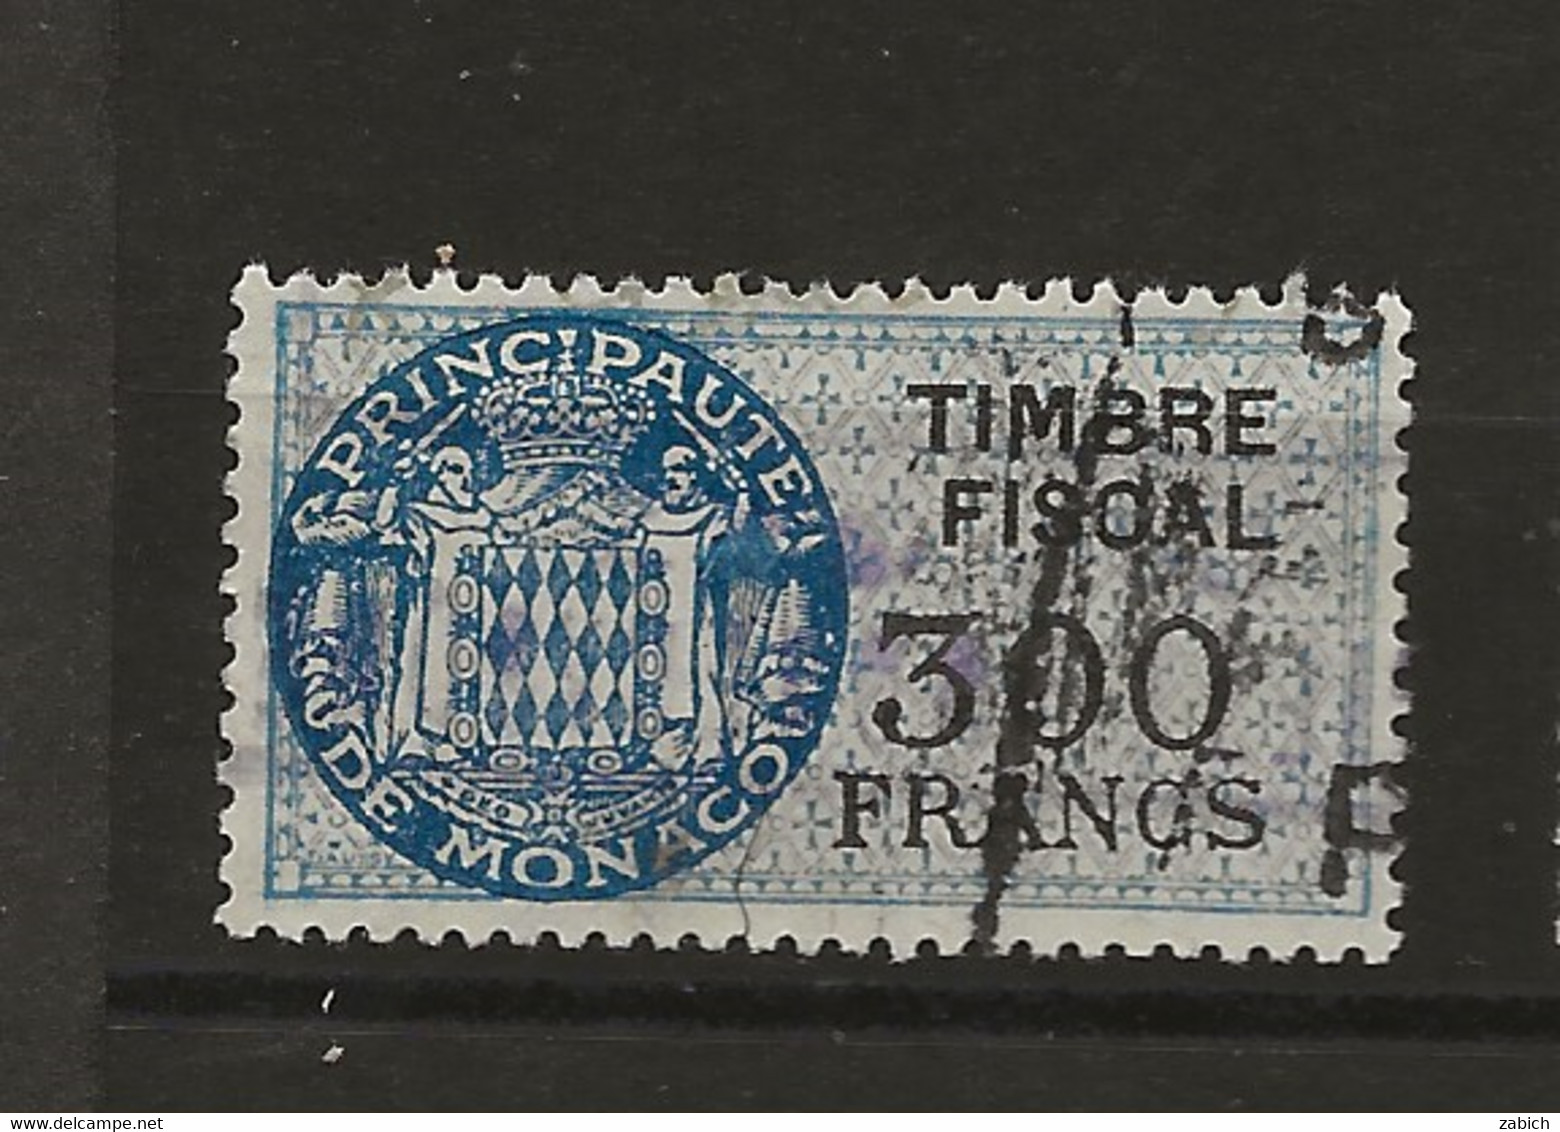 TIMBRES FISCAUX DE MONACO SERIE UNIFIEE  De 1949   N°17  300 Francs Bleu Oblitéré Cote 60 € - Revenue